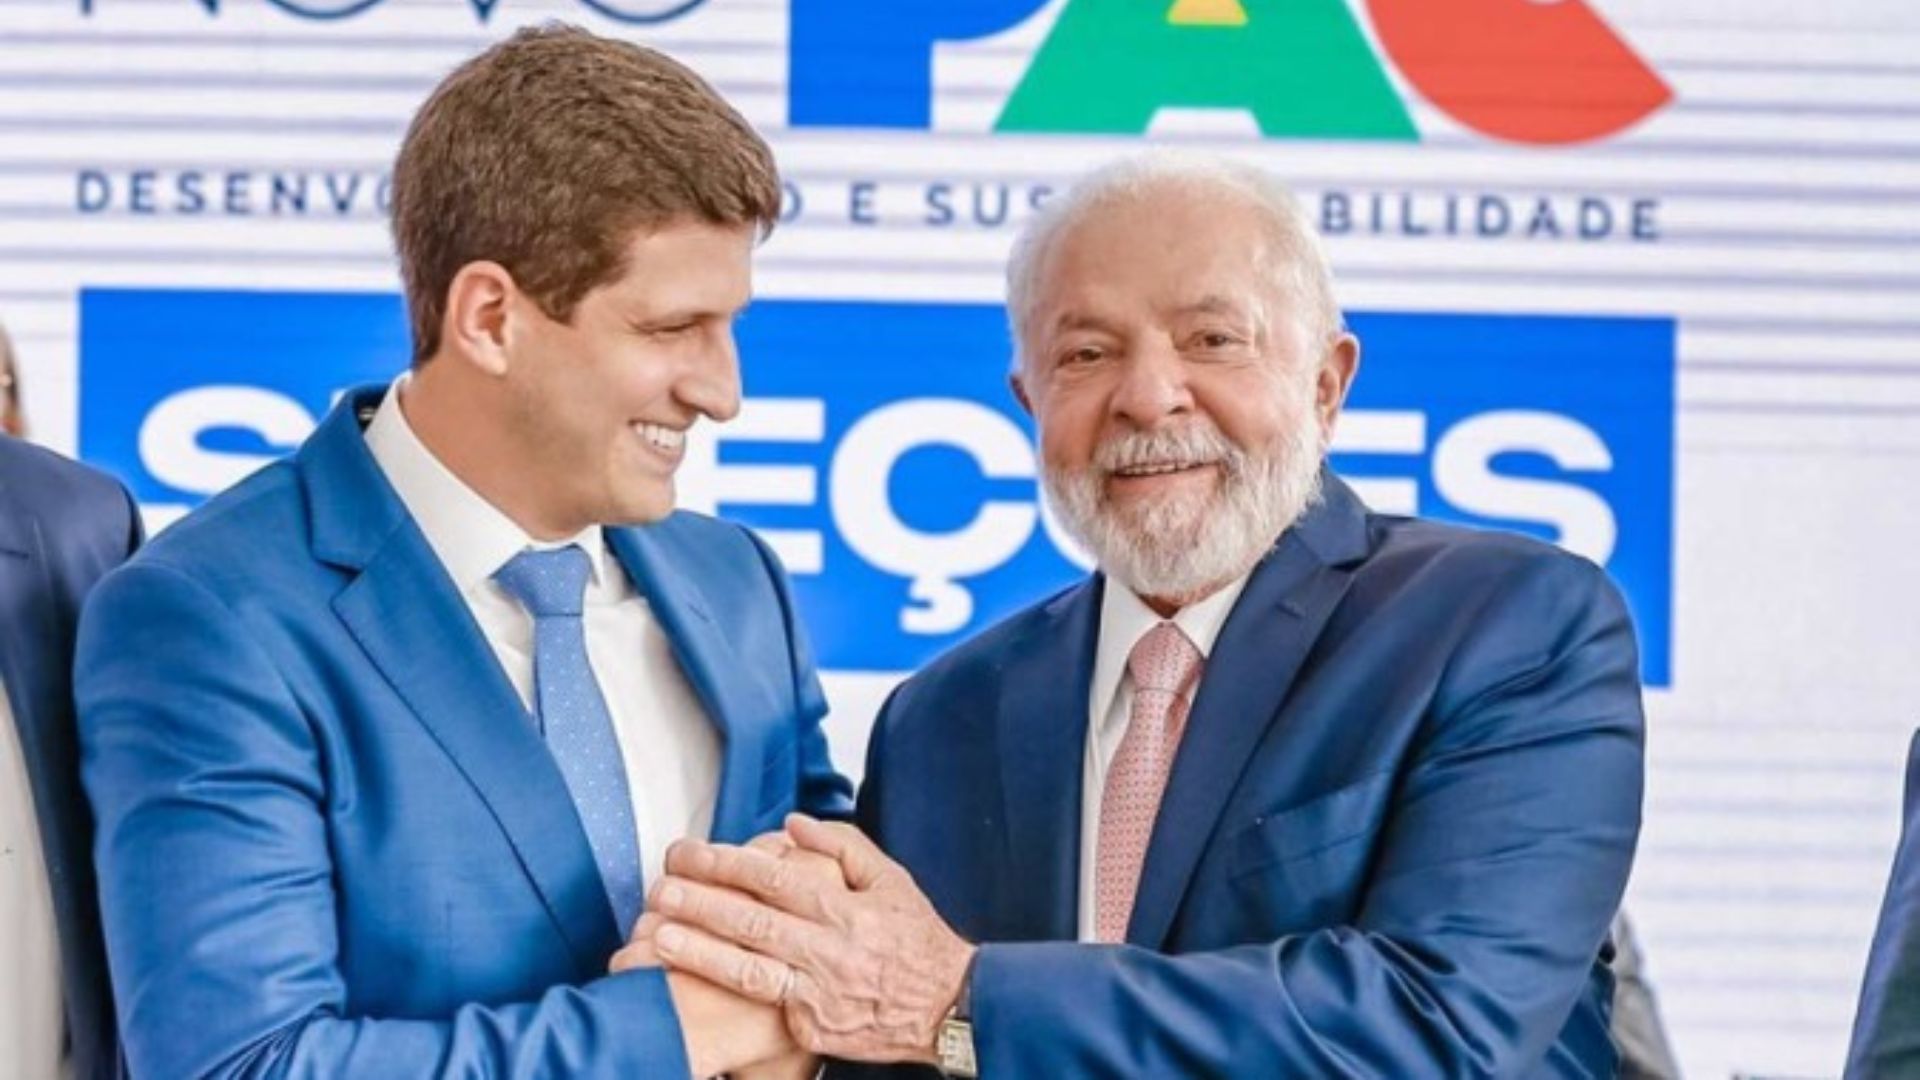 João Campos e Lula. Foto: Ricardo Stuckert/PR